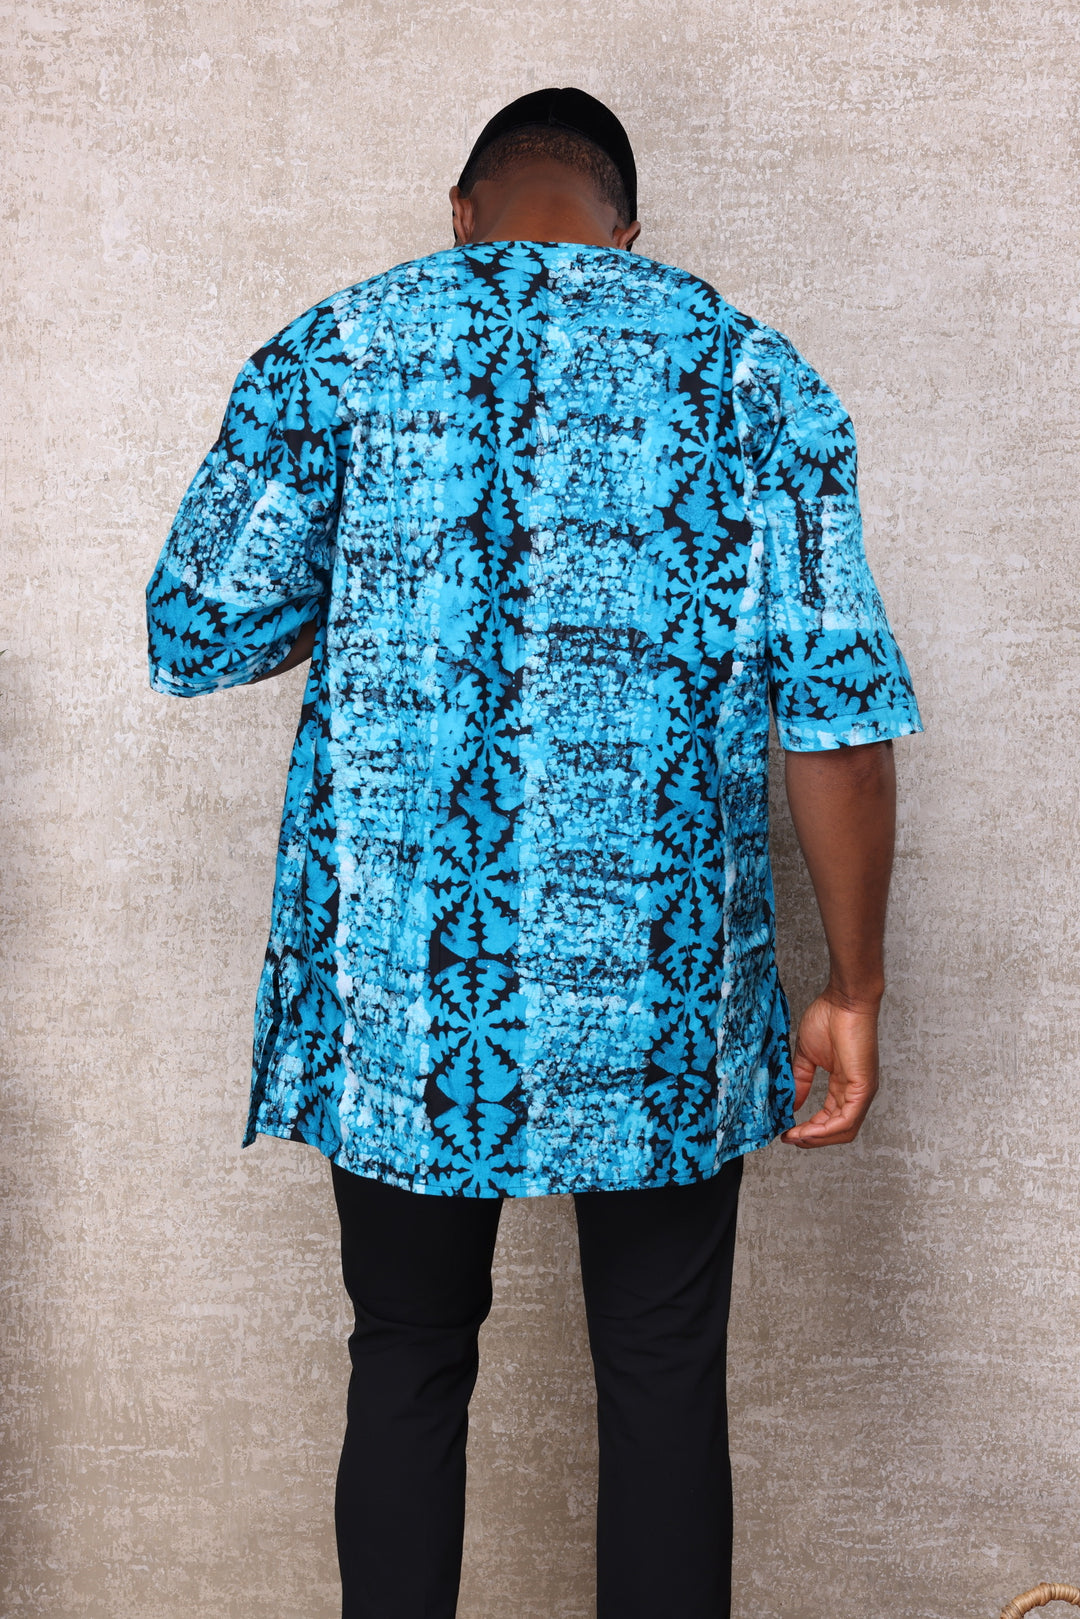 Authentic African batik shirt.